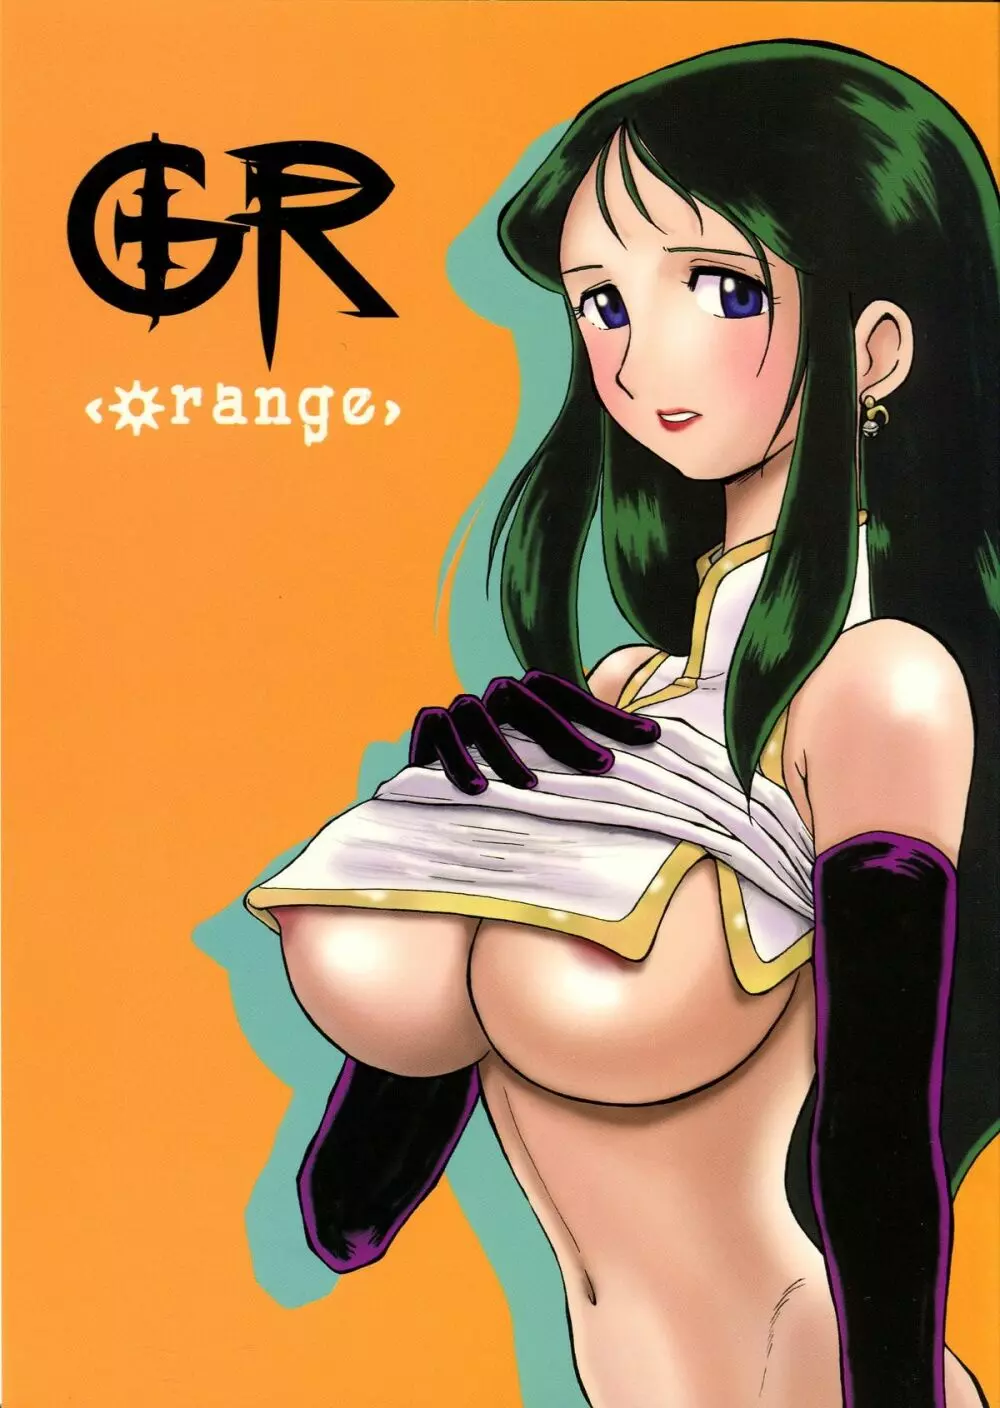 GR <orange>